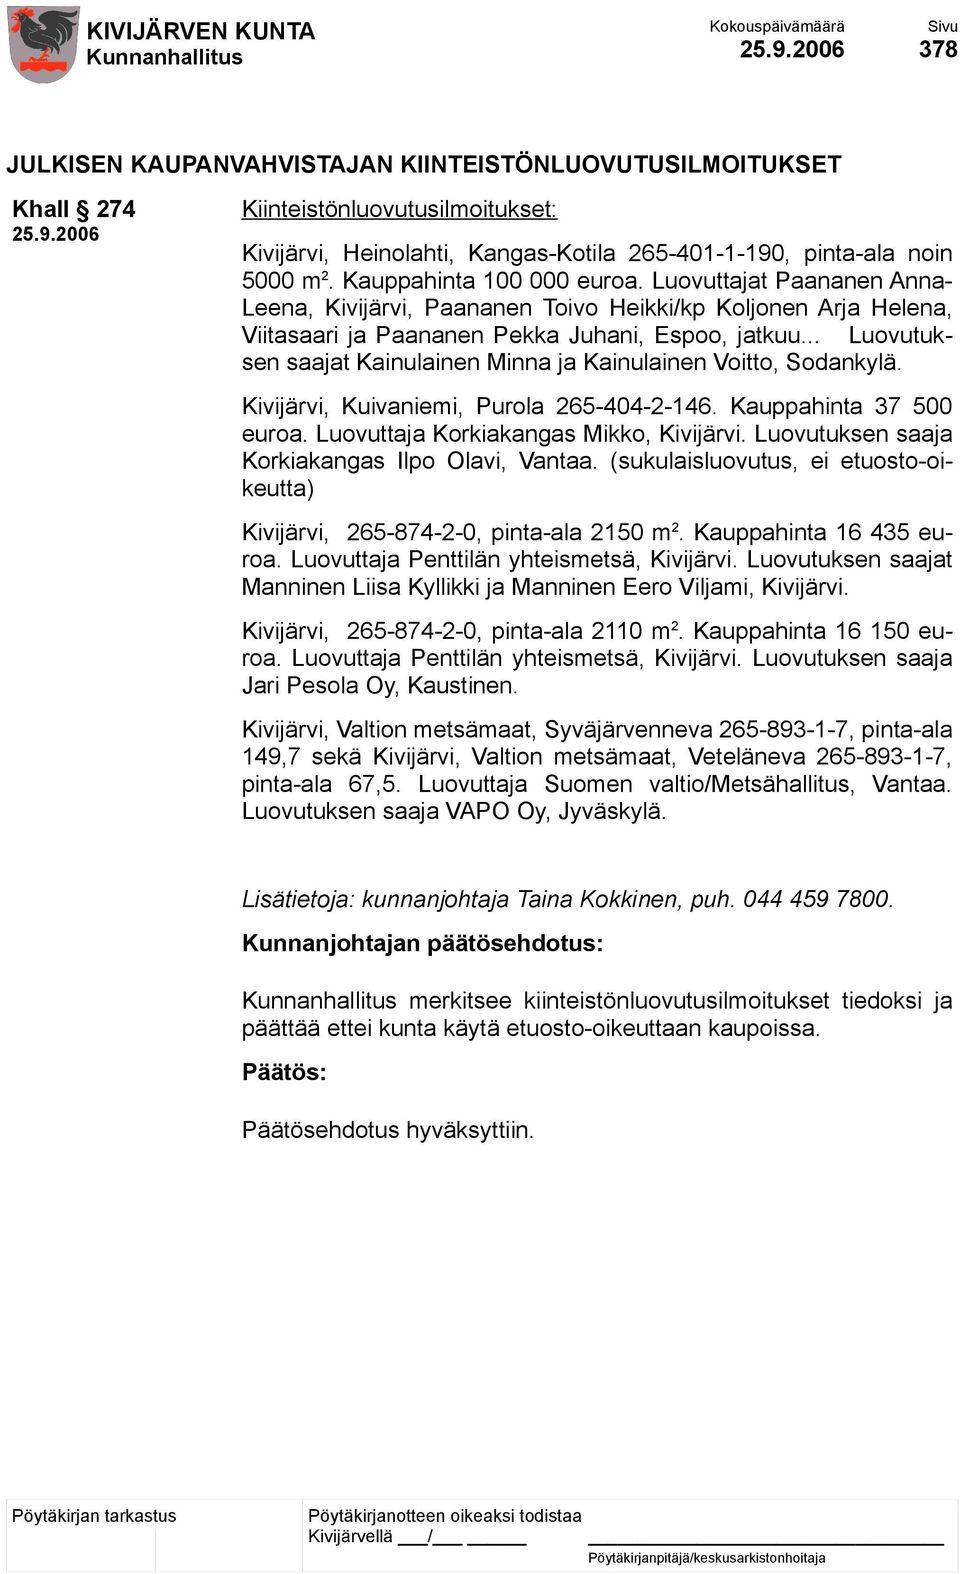 .. Luovutuksen saajat Kainulainen Minna ja Kainulainen Voitto, Sodankylä. Kivijärvi, Kuivaniemi, Purola 265-404-2-146. Kauppahinta 37 500 euroa. Luovuttaja Korkiakangas Mikko, Kivijärvi.